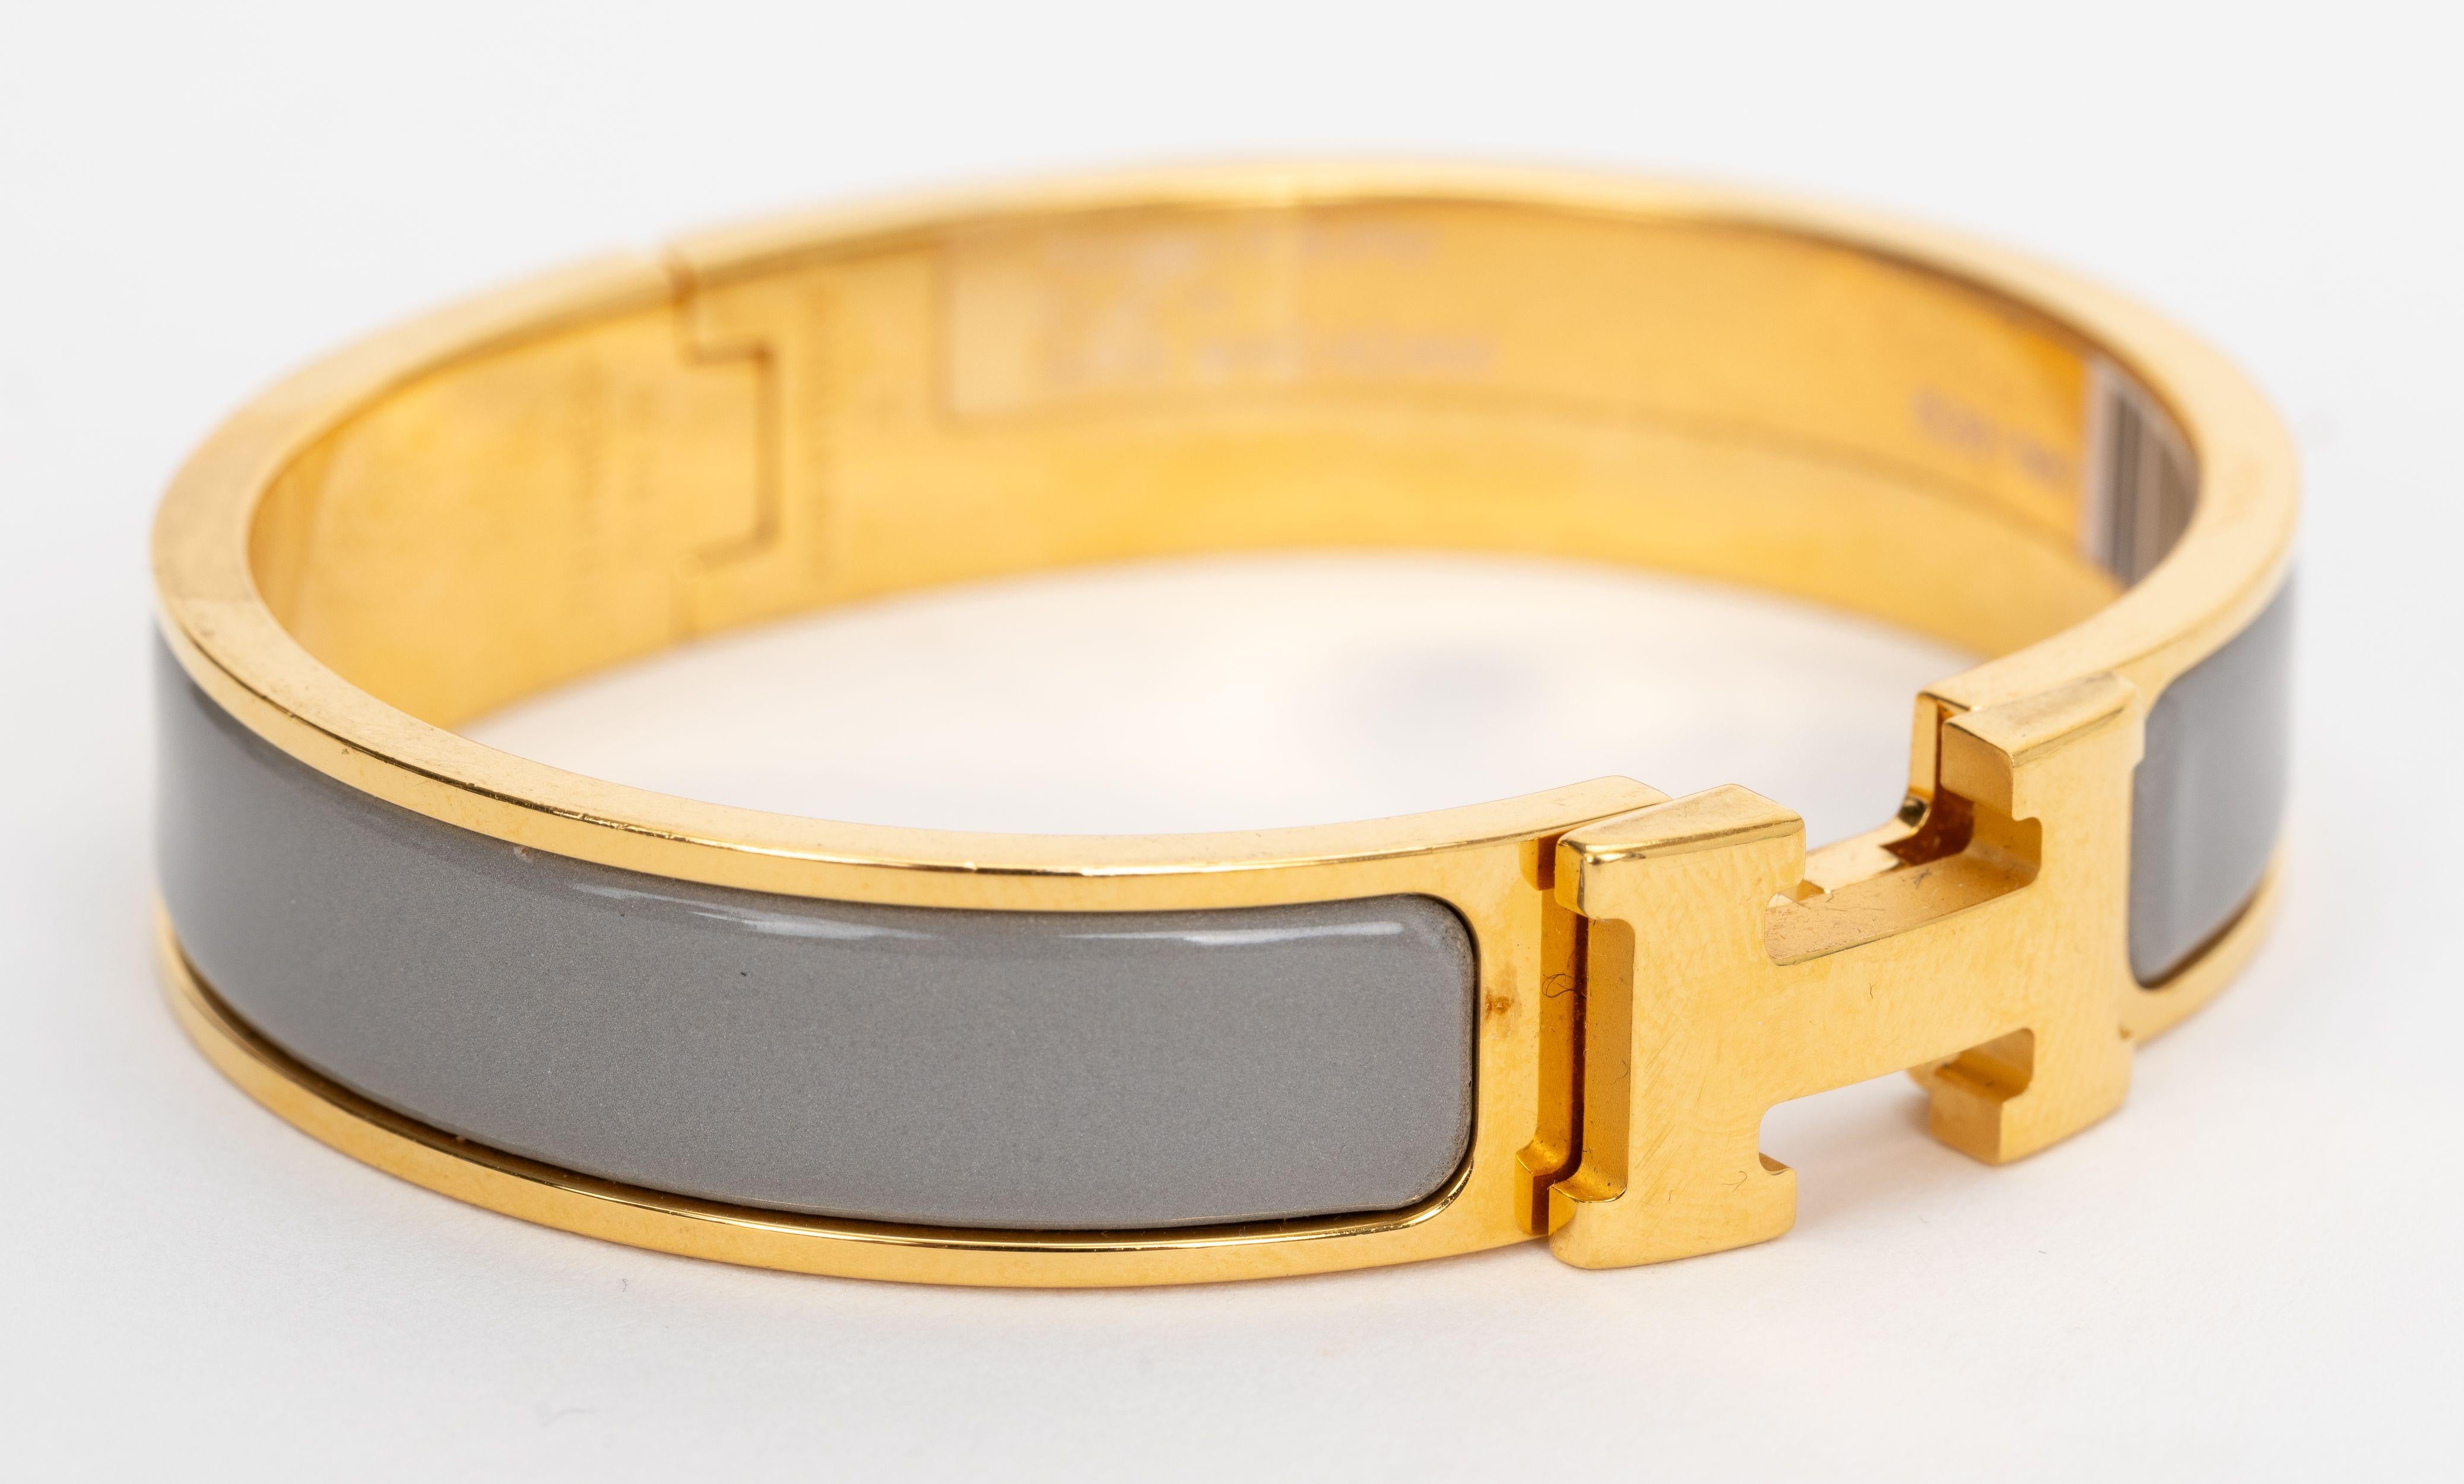 Le bracelet Hermes Clic clac H, étroit, en macadamia gris émaillé avec des attaches plaquées or.
Taille PM, neuf, non porté, livré avec une pochette en velours.